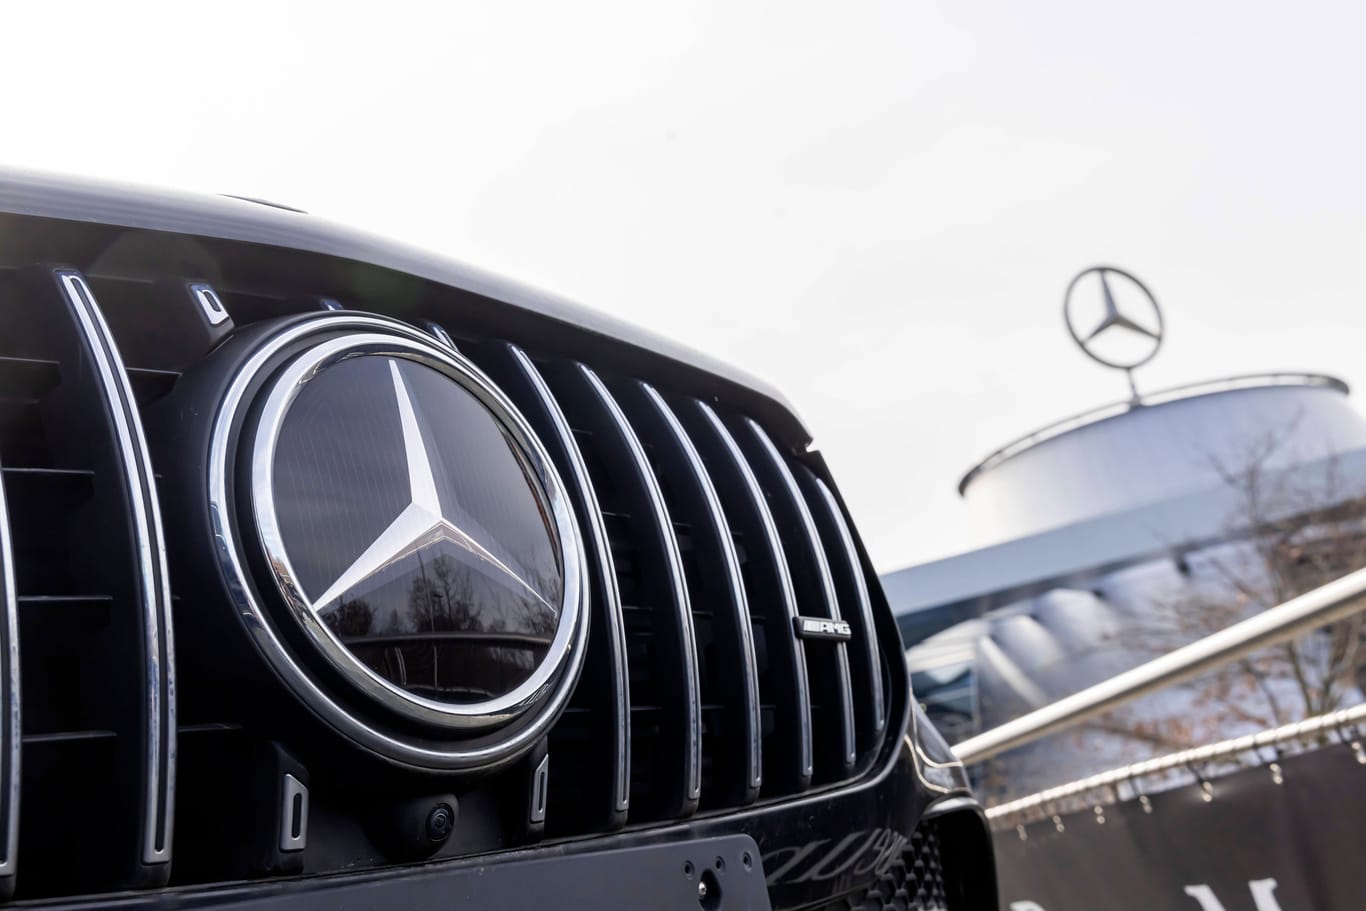 Hohe Nachlässe bei Mercedes: Vor allem im Luxussegment lässt sich dadurch viel Geld sparen. Teuer sind die Autos dennoch.